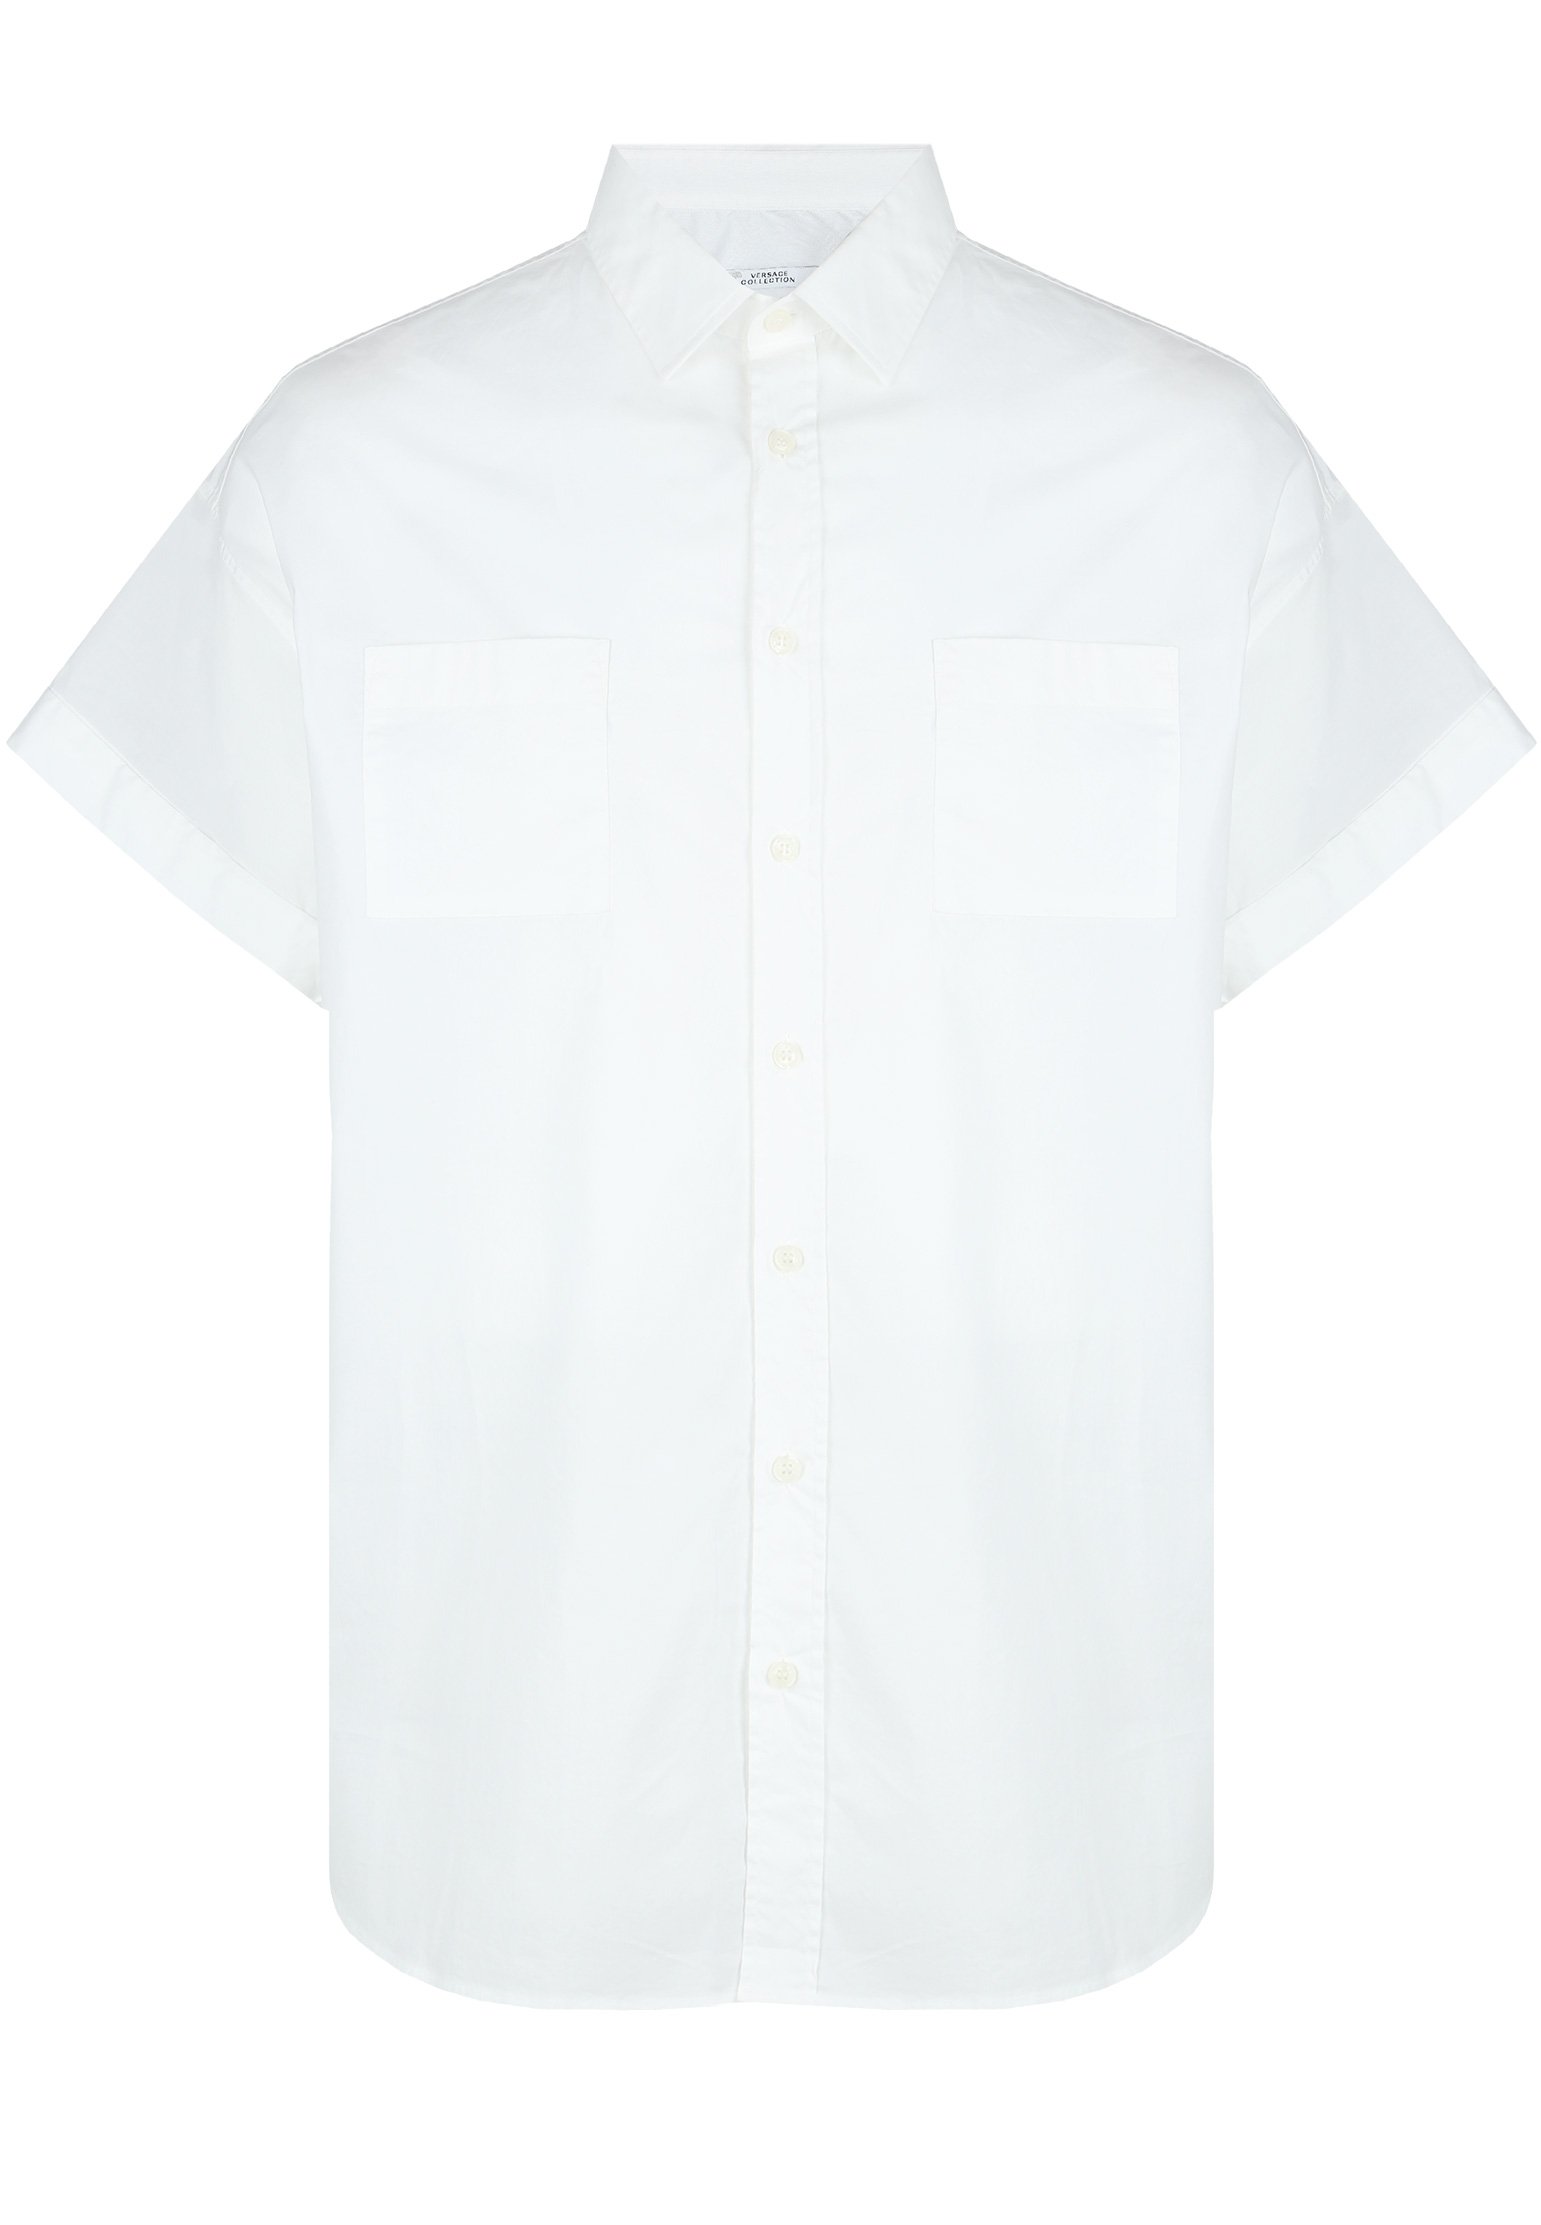 Рубашка мужская Versace Collection 100570 белая 41